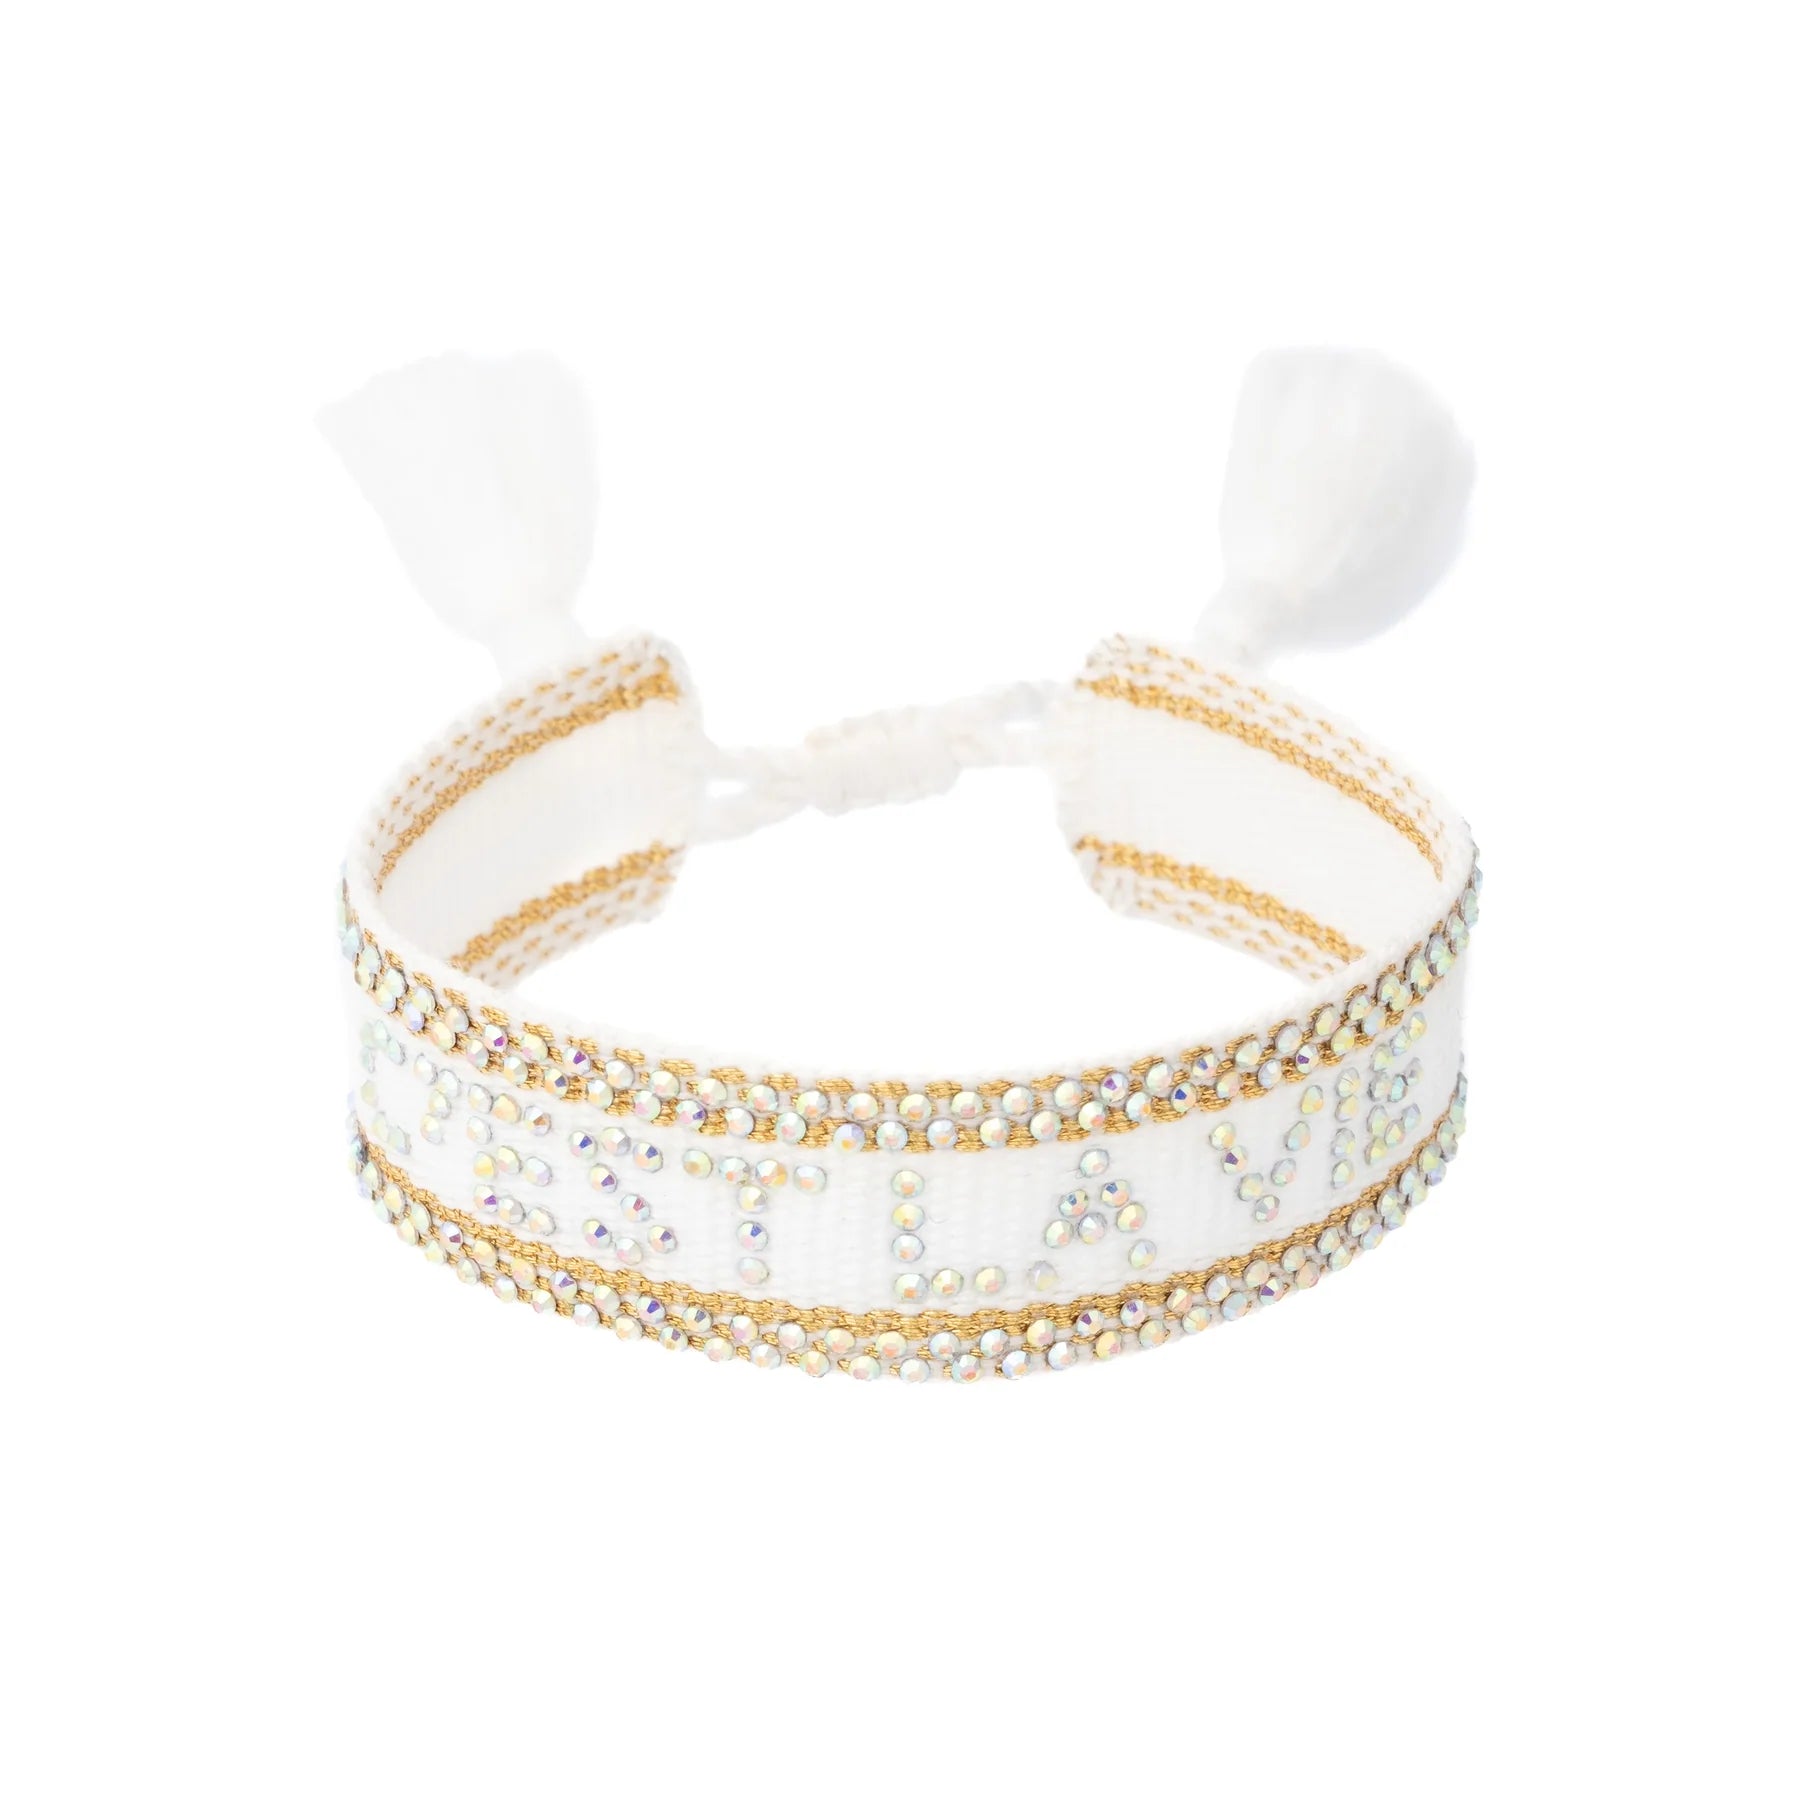 Woven Bracelet w/ Crystals "C'est La Vie" White